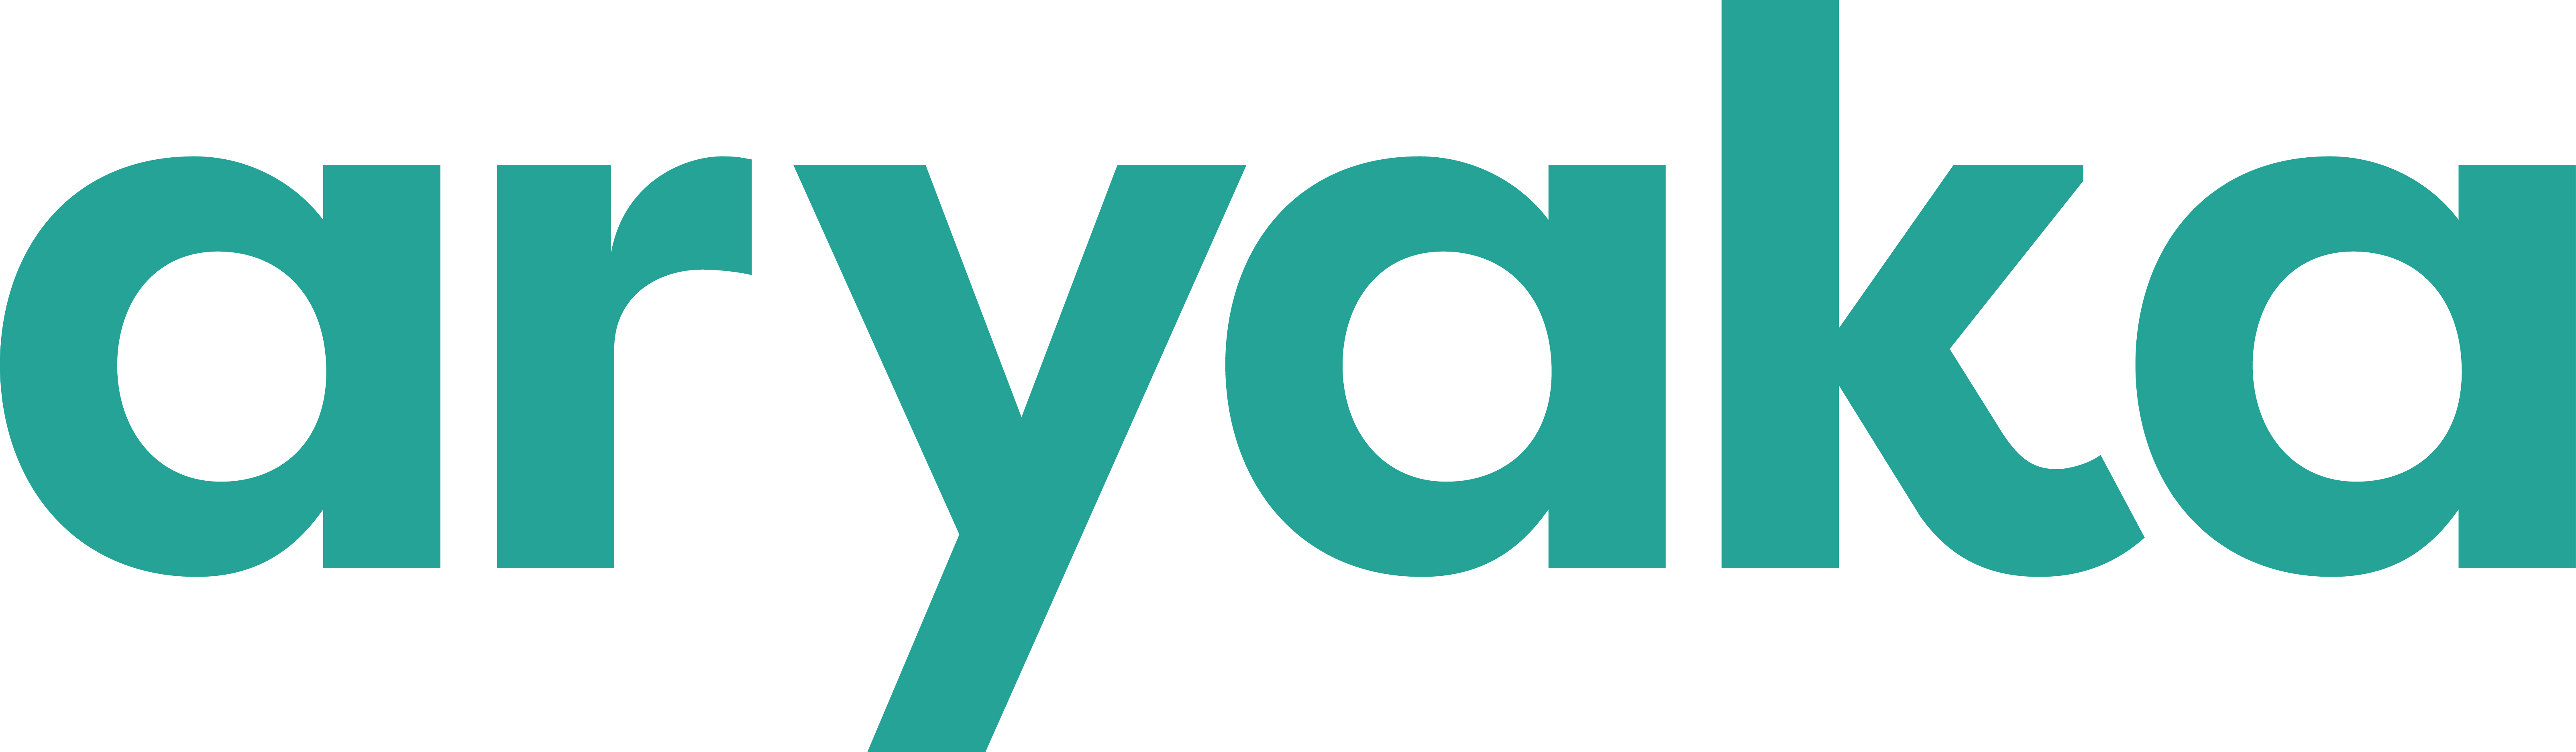 Aryaka-Logo_Teal